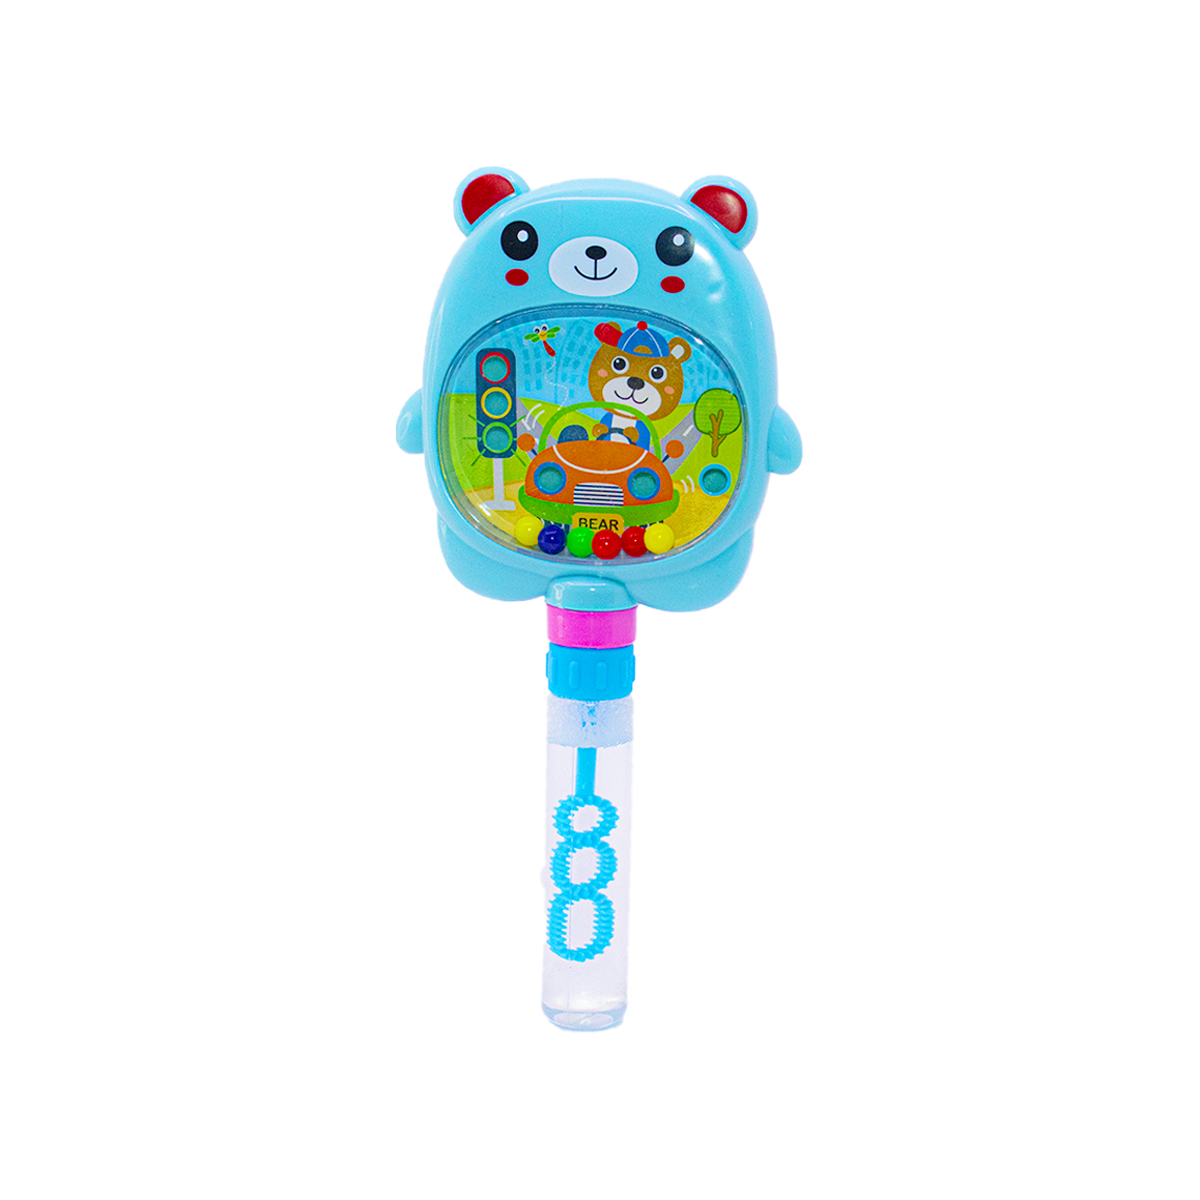 Shop now for the best soap bubble toys Ordrat Online